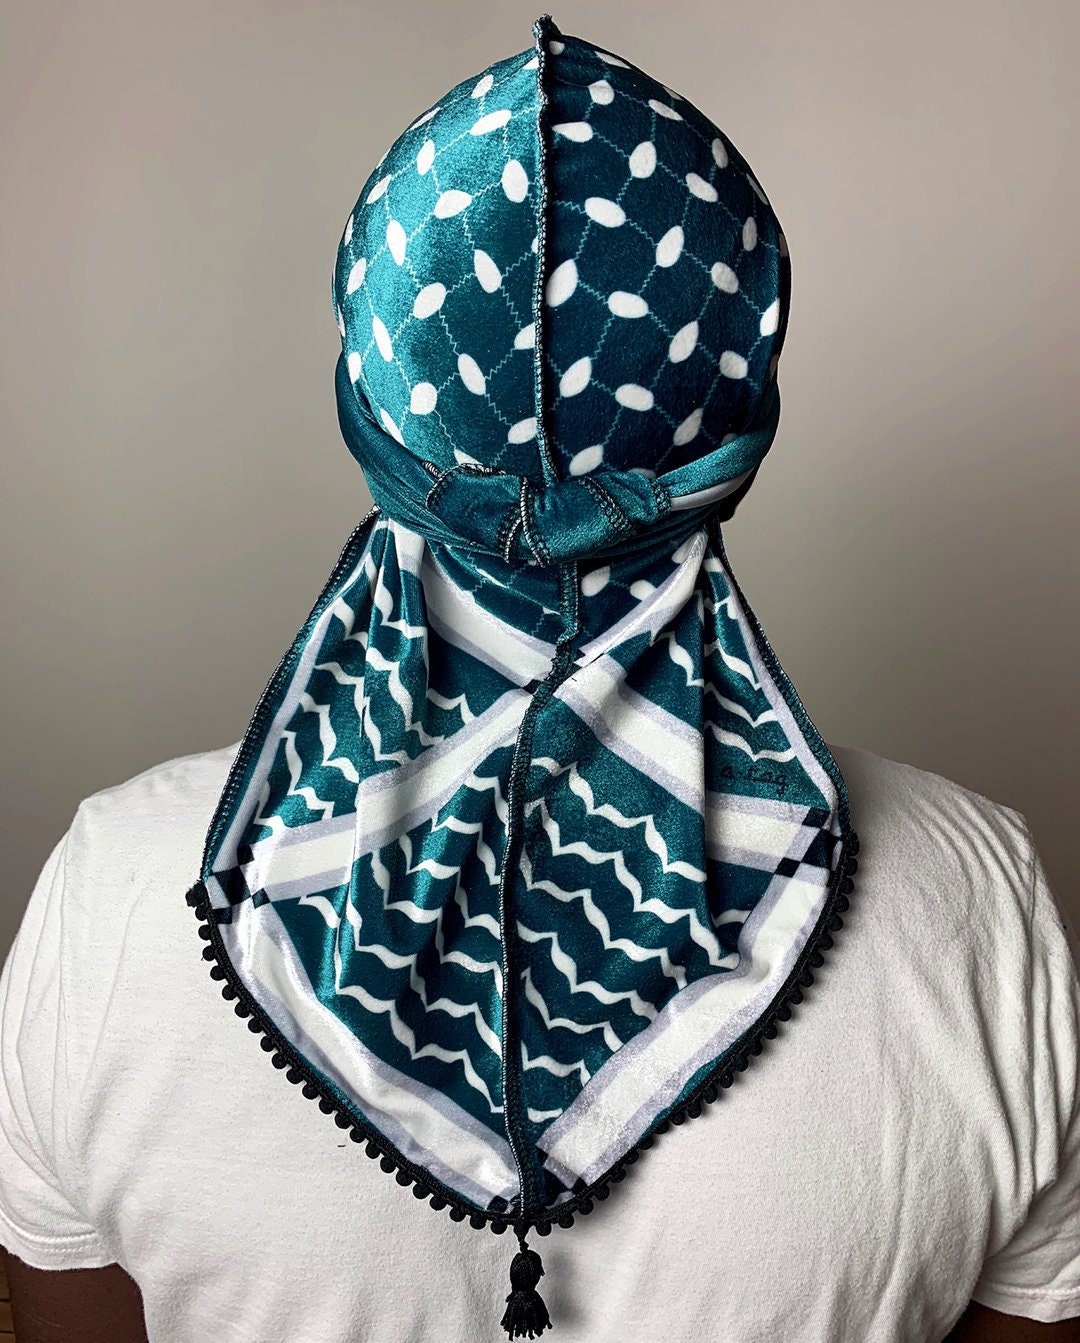 GREUS Men's Arab Shemagh Headscarf Muslim Headcover Shawl Keffiyeh Arabic  Scarf Turban